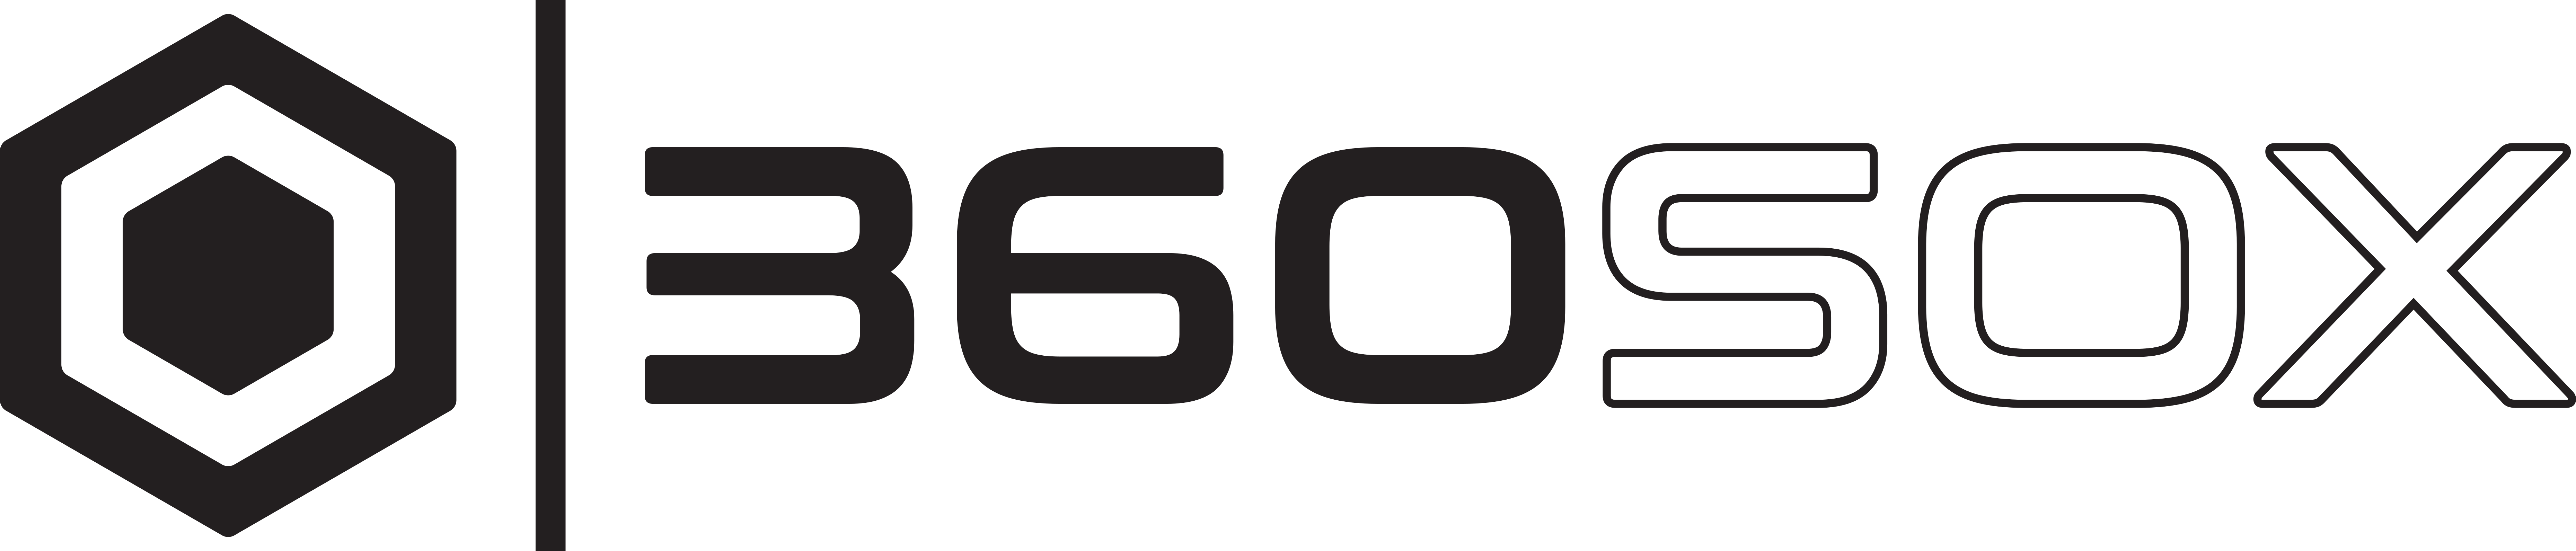 360sox